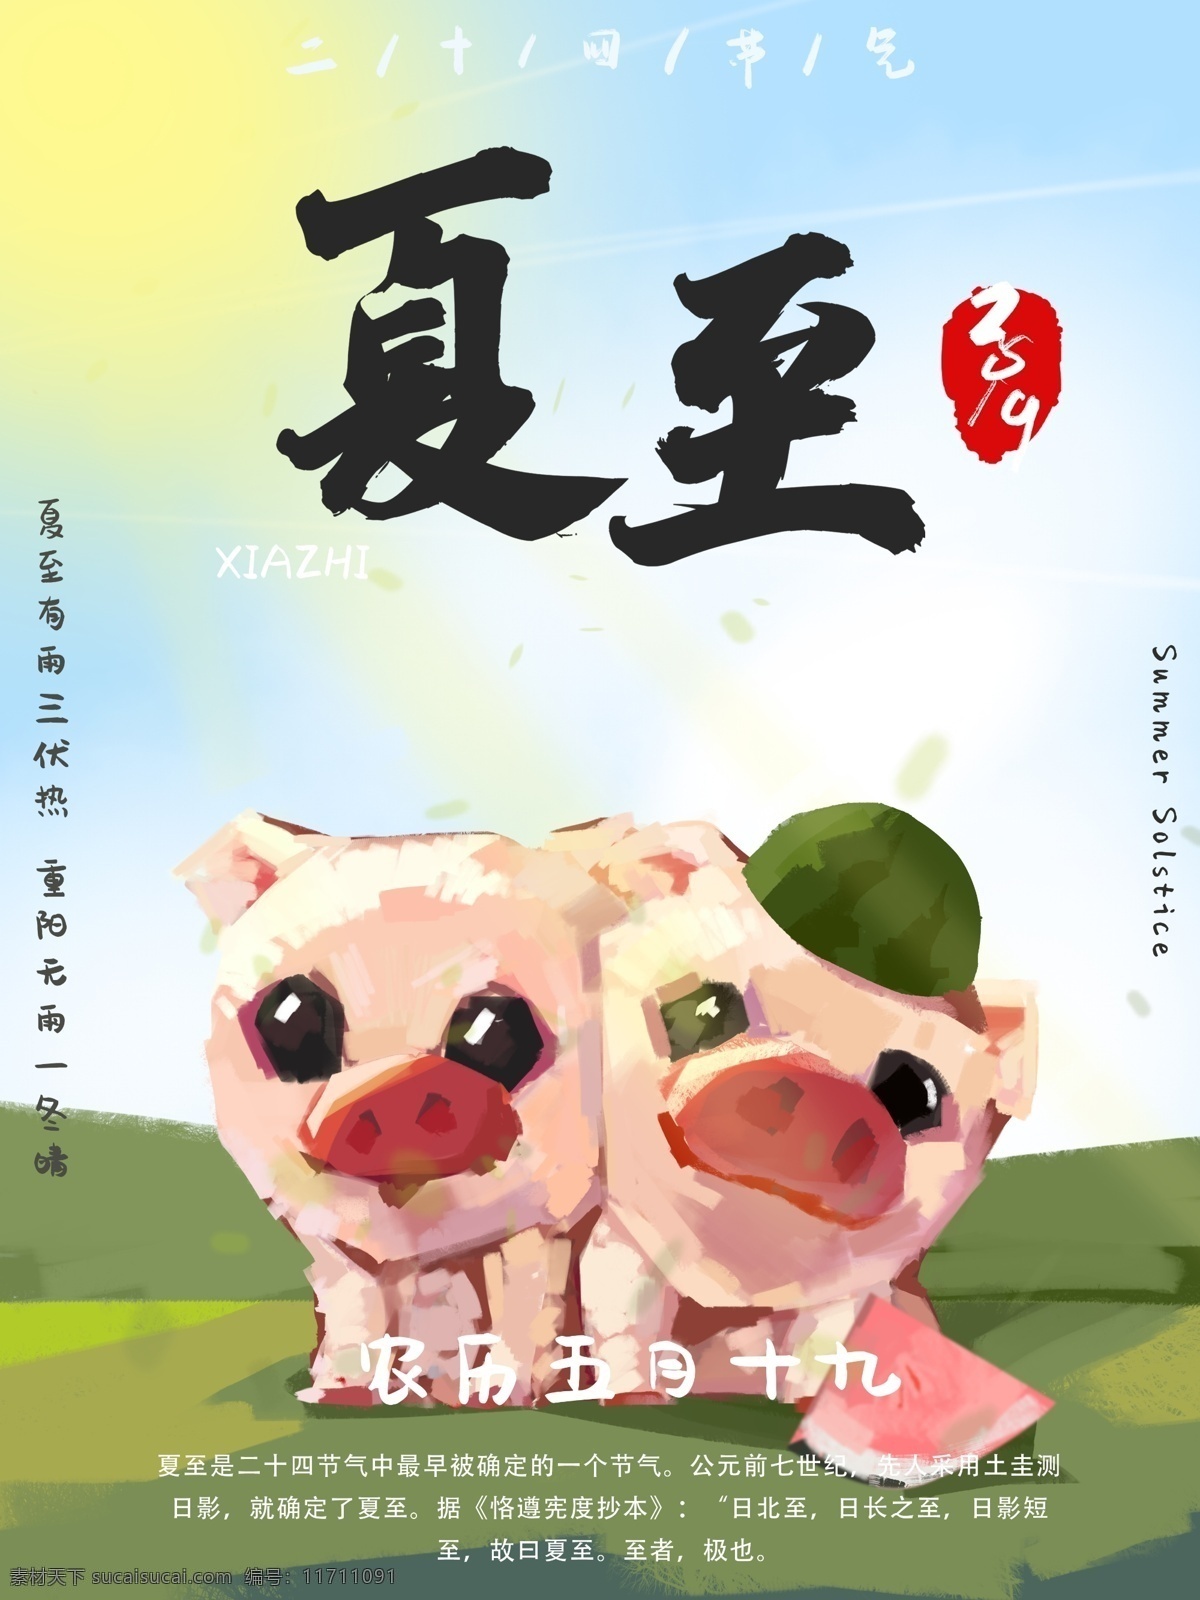 手绘 节气 夏至 海报 节日 猪年 插画 朋友圈 宣传